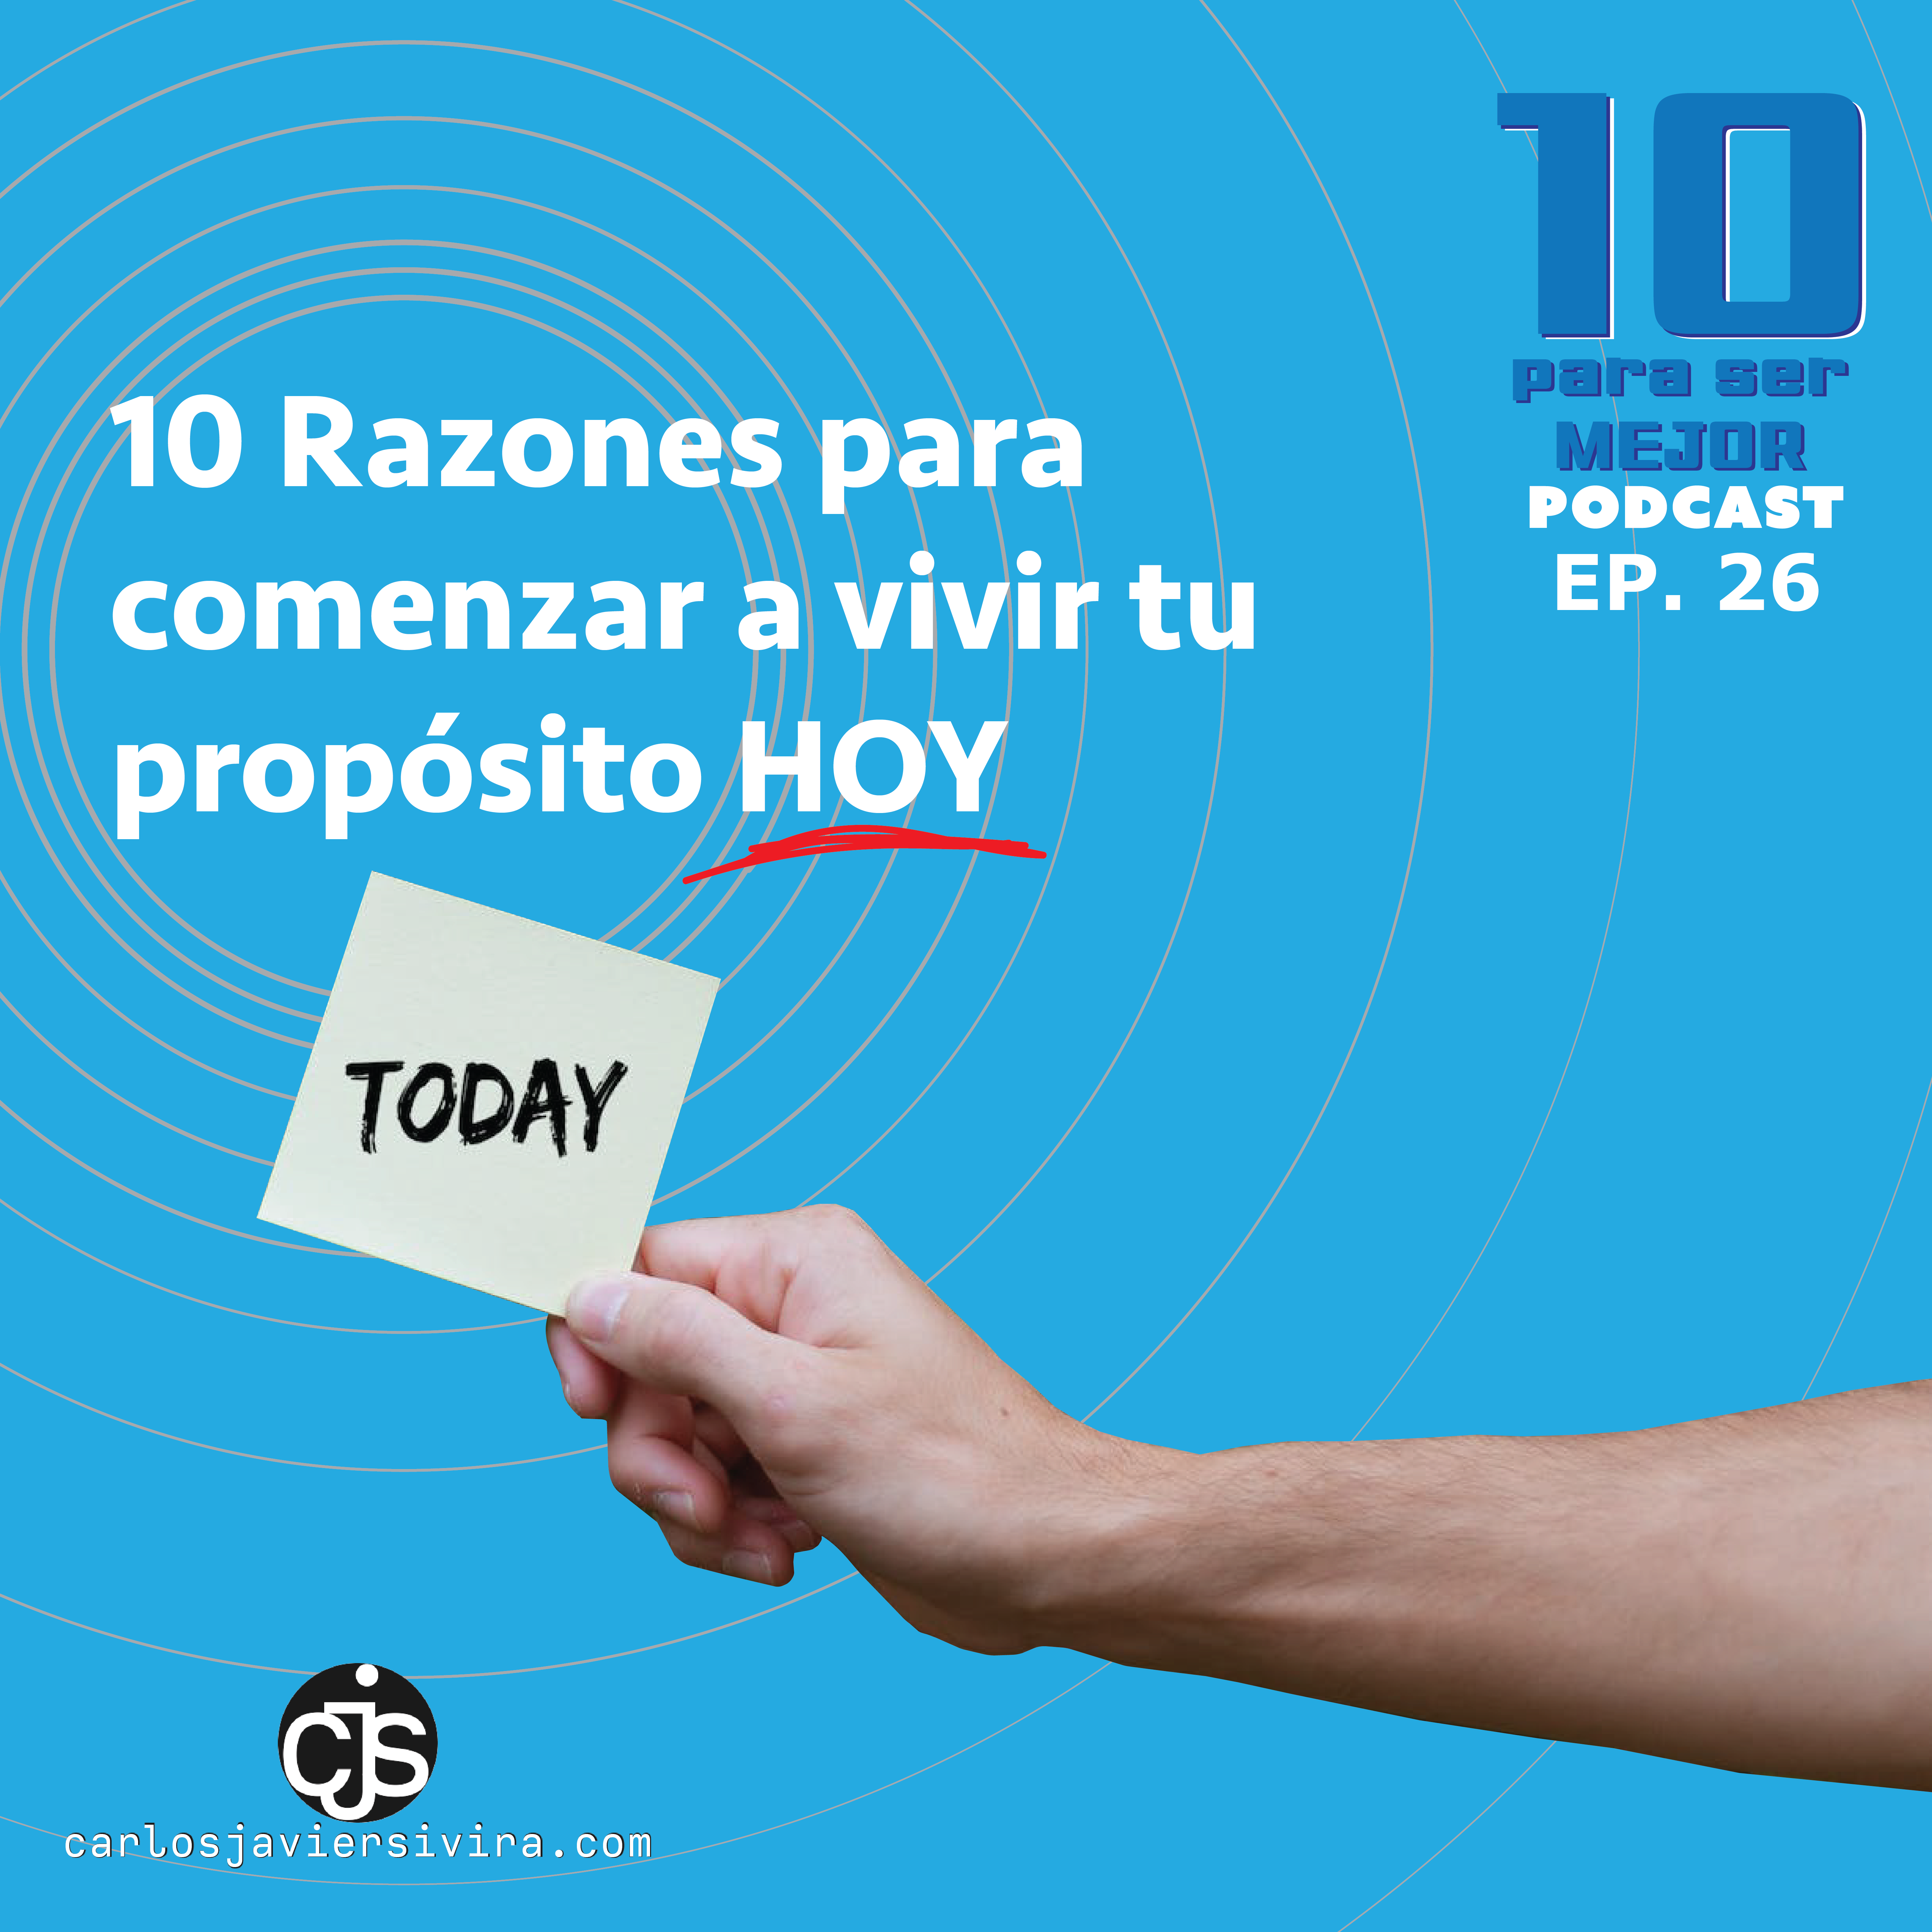 Podcast 10 para ser Mejor episodio 26